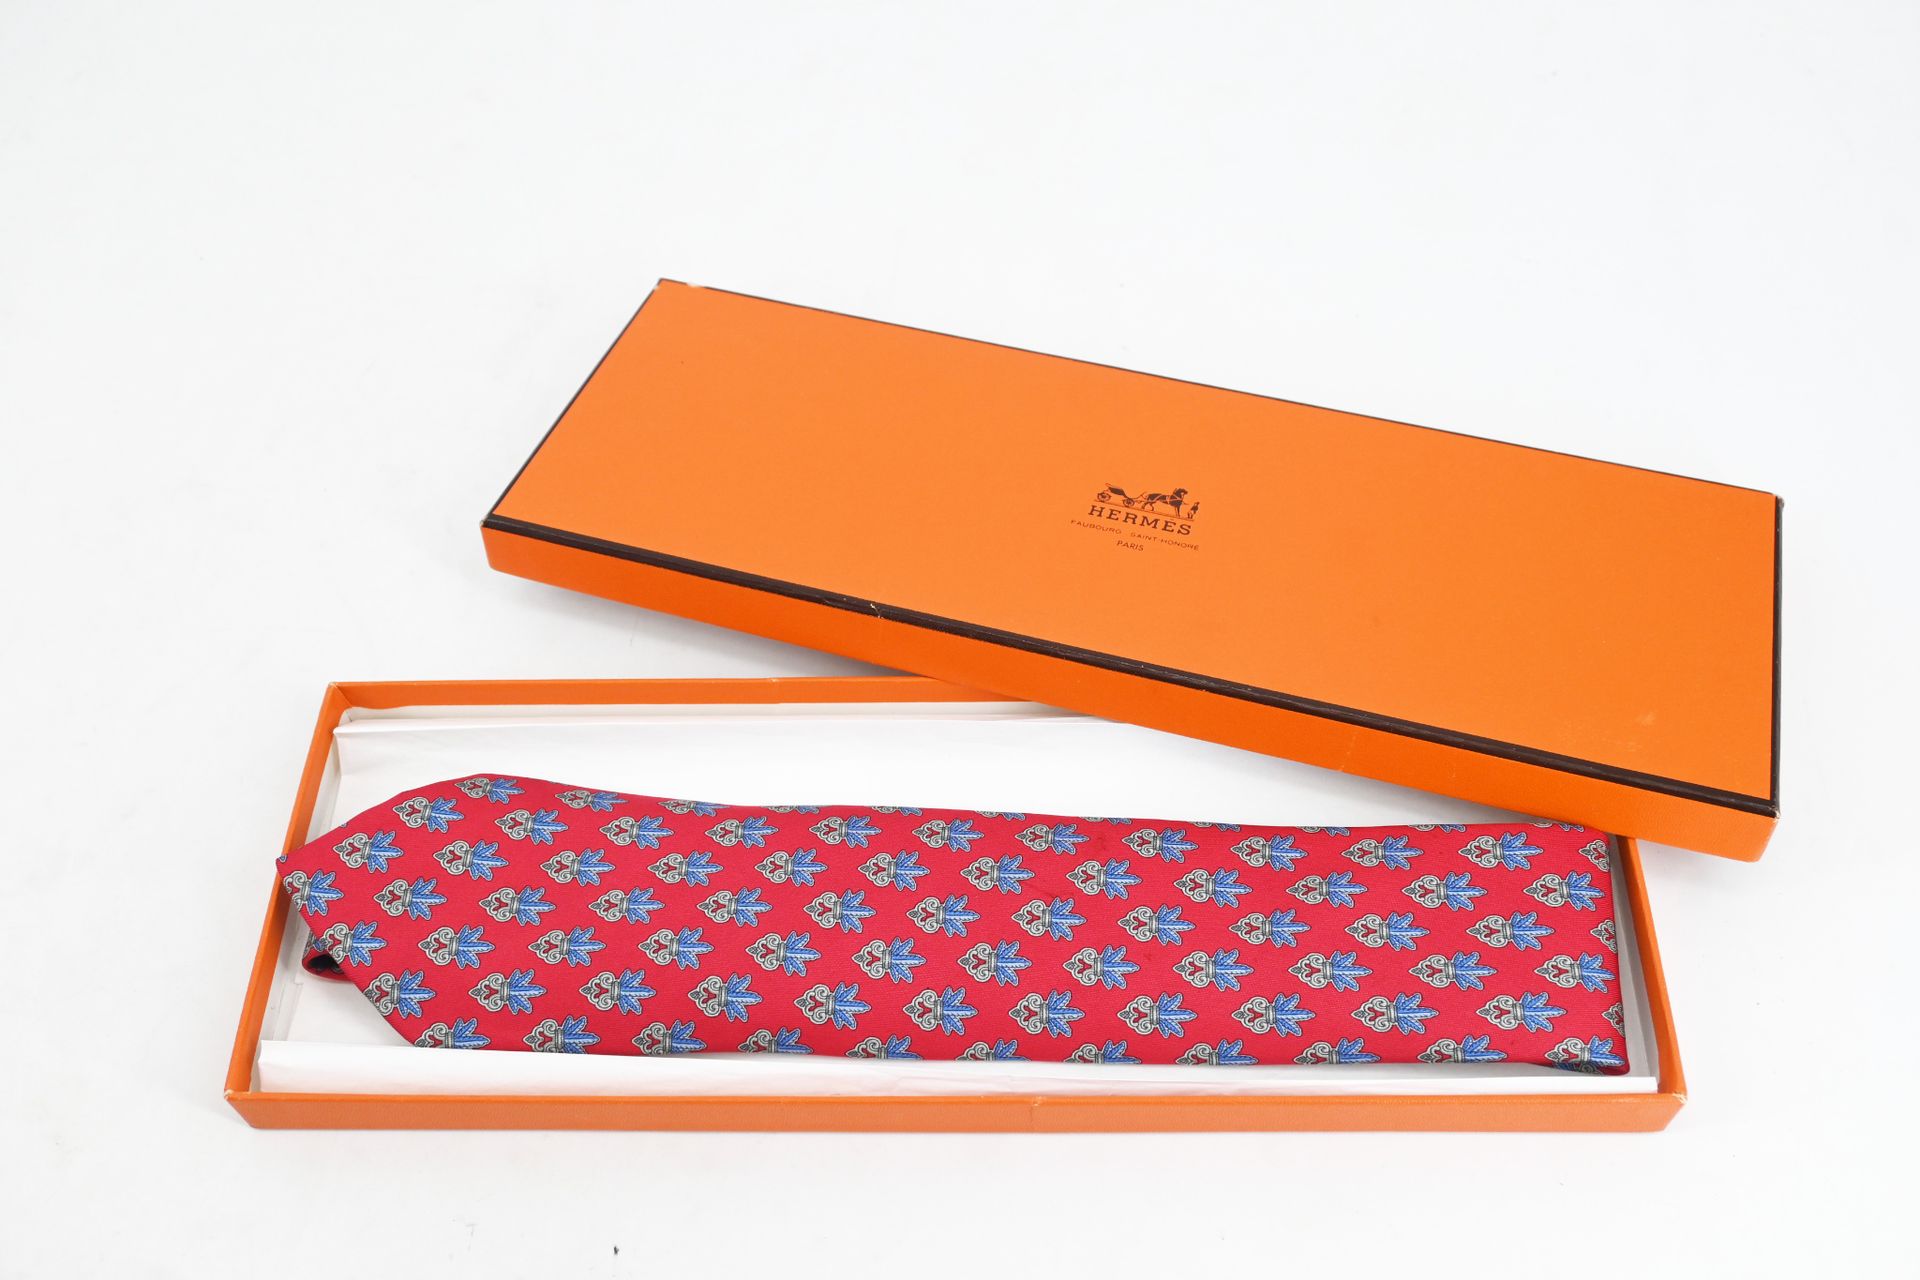 Null 爱马仕 -
丝质领带，红底蓝羽毛花束装饰（有轻微污渍）及其包装盒（有冲击）。